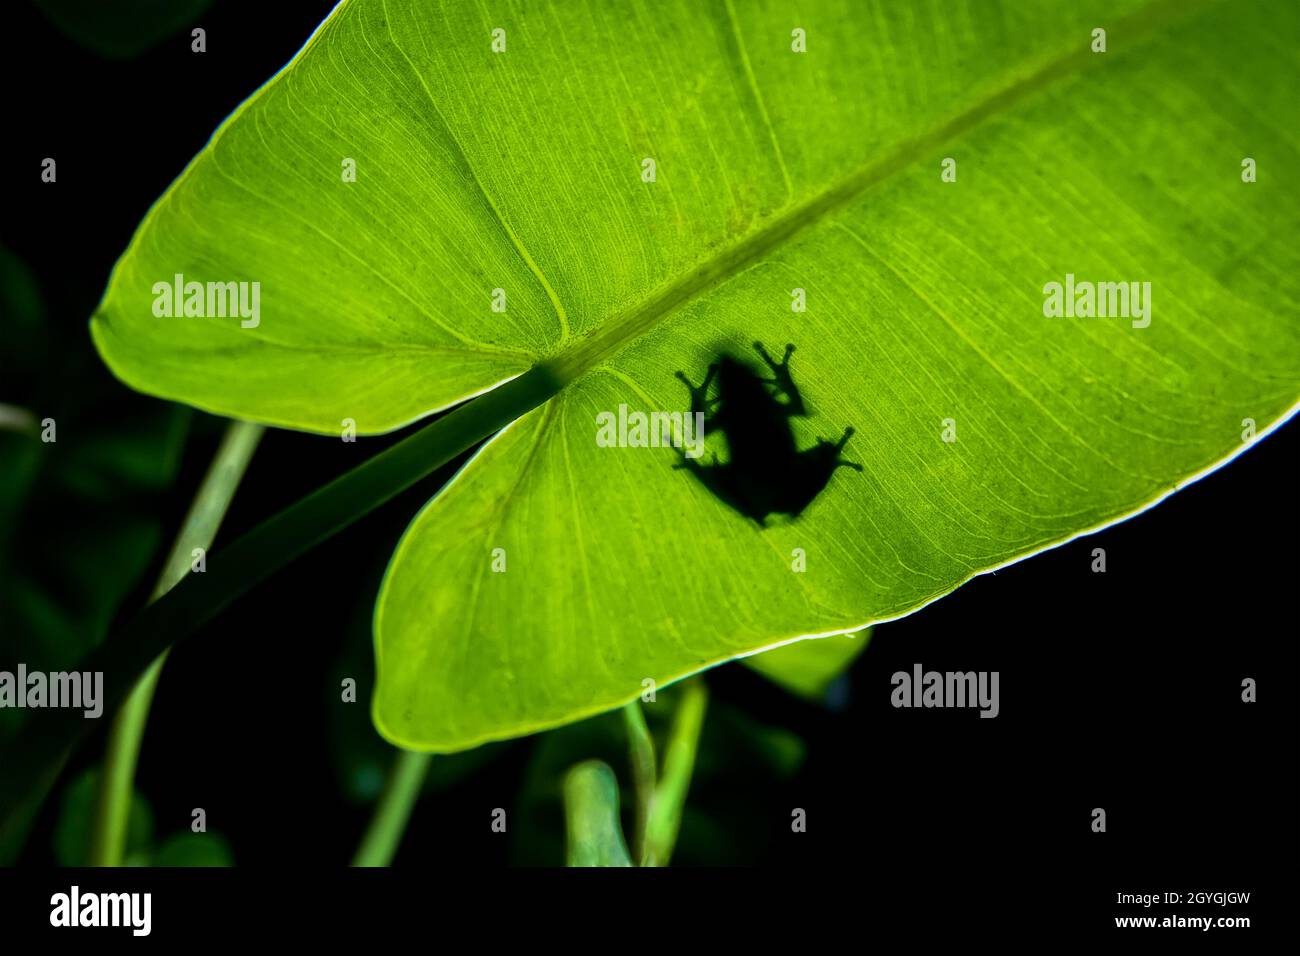 Macro-image grand angle avec diffuseur flash d'une jolie grenouille assise sur une feuille dans son habitat naturel Banque D'Images